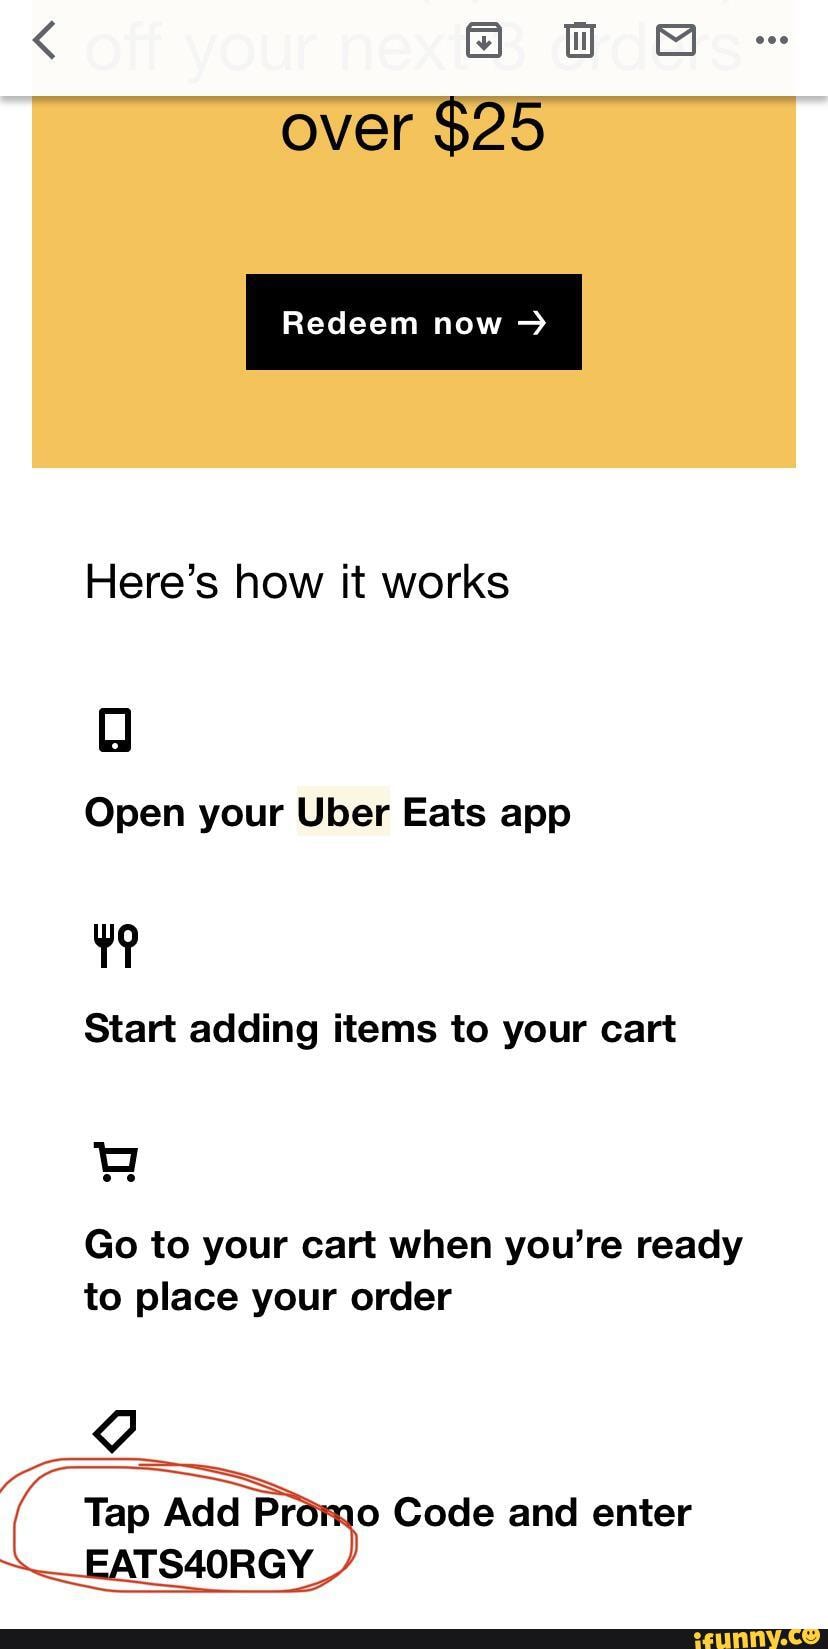 Over 25 Redeem now Here's how it works Open your Uber Eats app Start